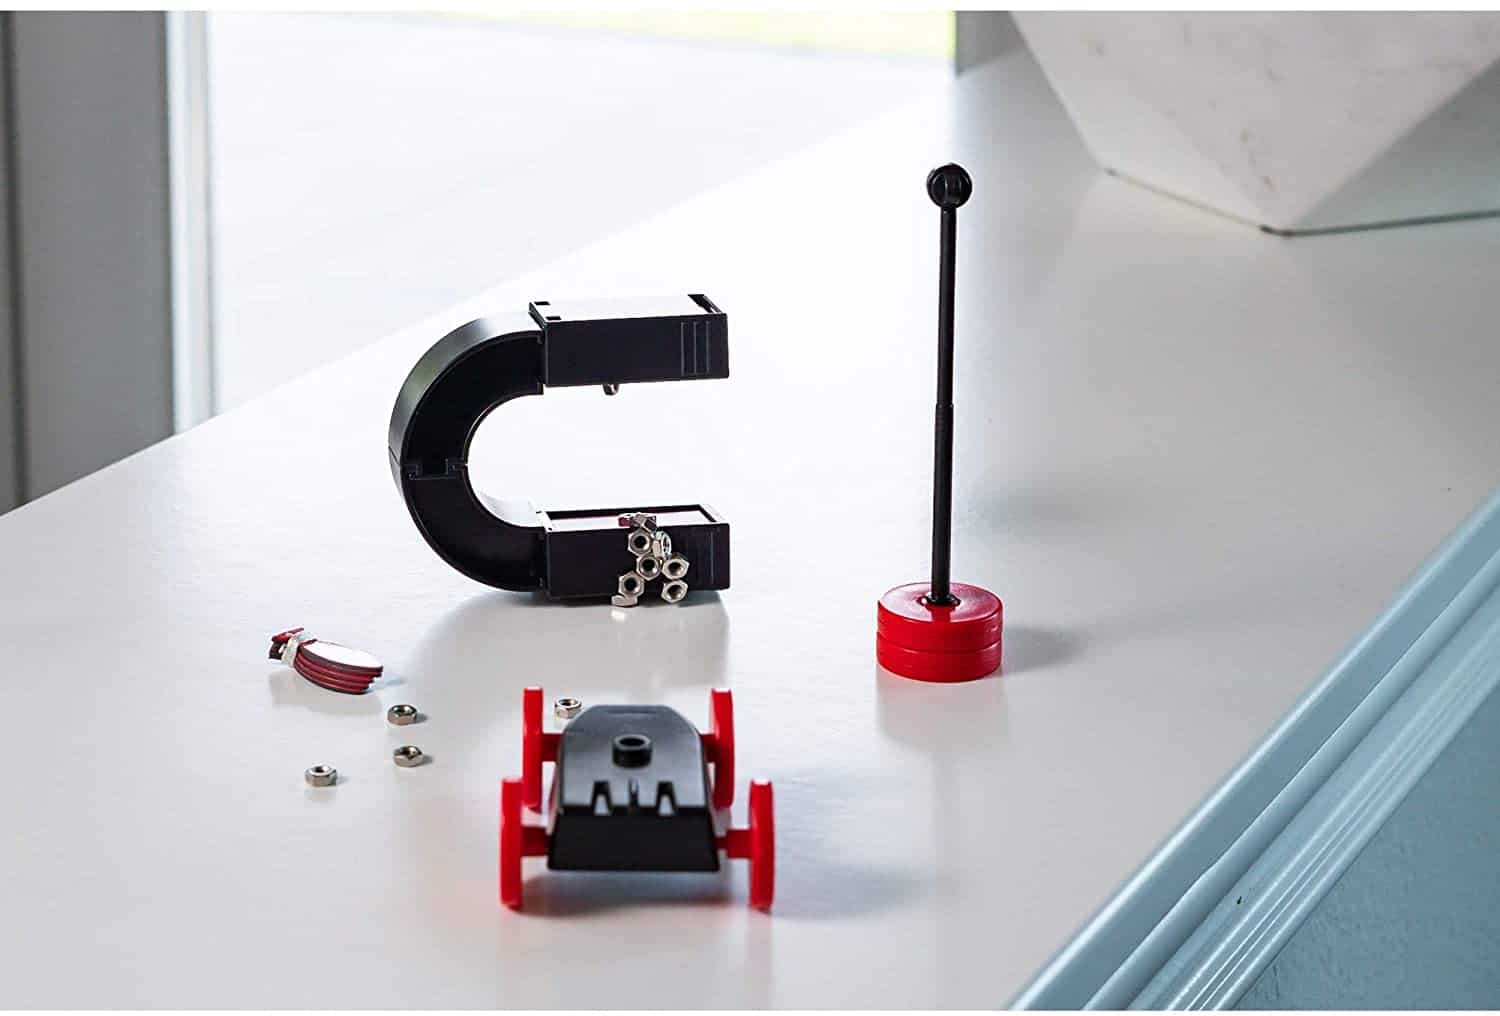 4M Kidzlabs Magnet Science Kit